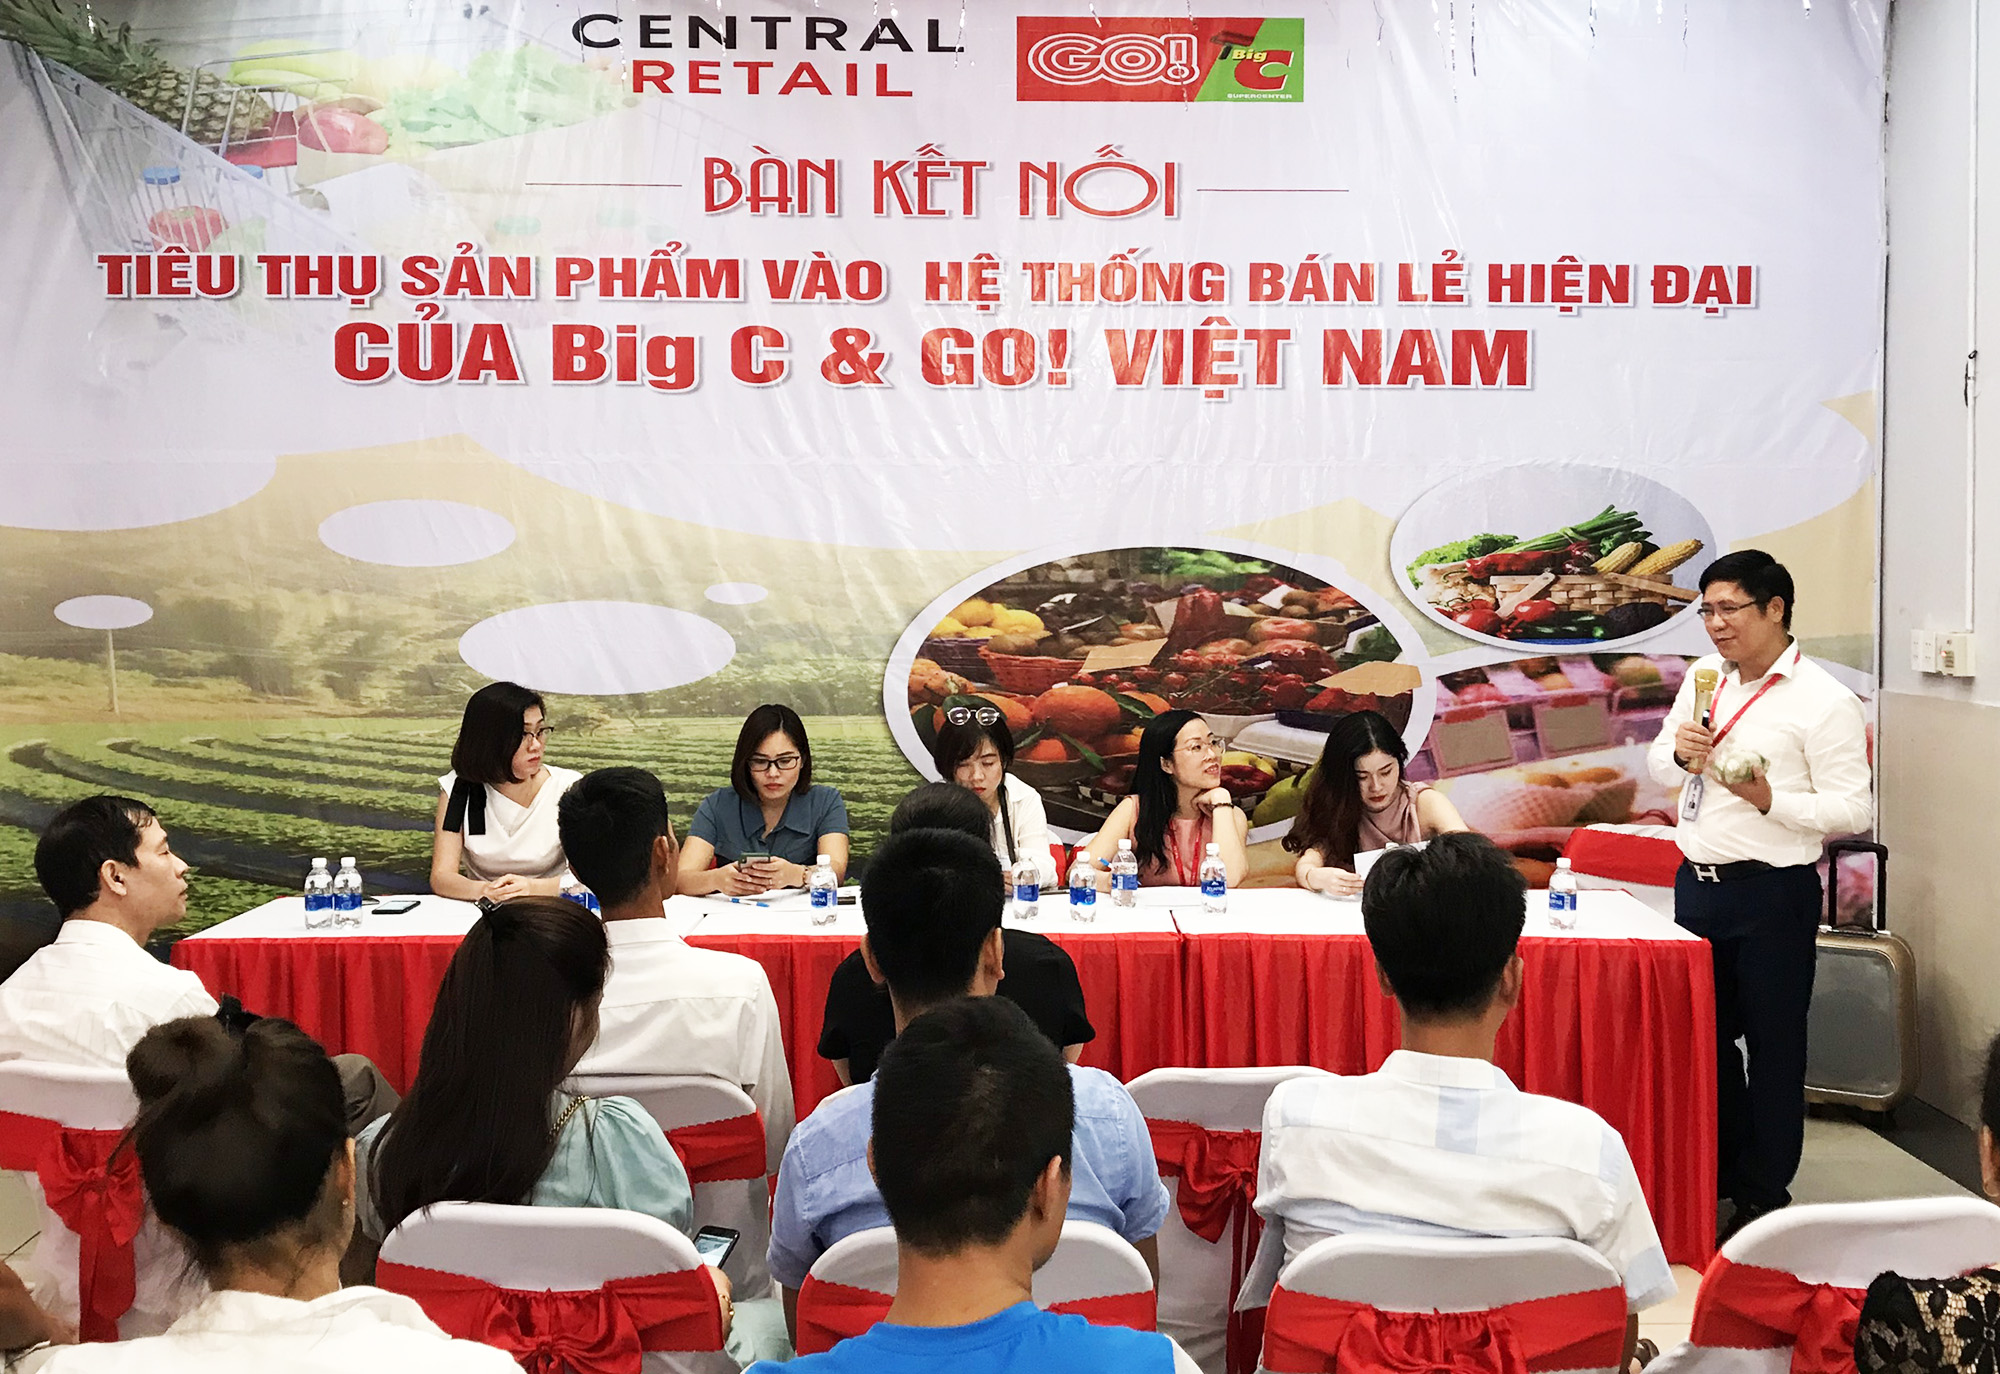 Sở Công Thương phối hợp tổ chức hội nghị kết nối tiêu thụ sản phẩm OCOP Quảng Ninh vào hệ thống bán lẻ hiện đại của Big C, tháng 7/2020.